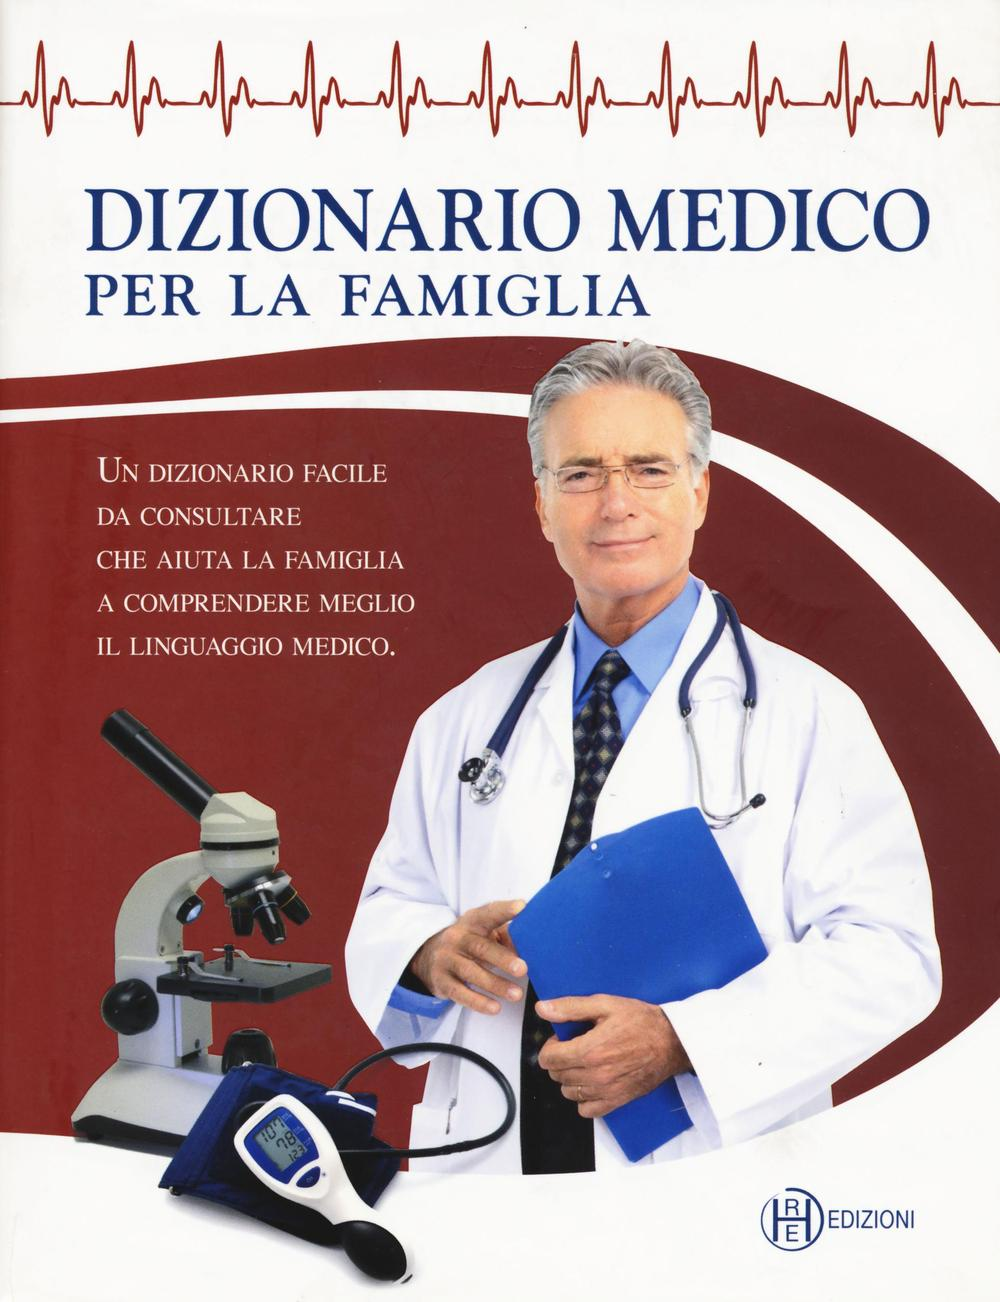 Image of Dizionario medico per la famiglia